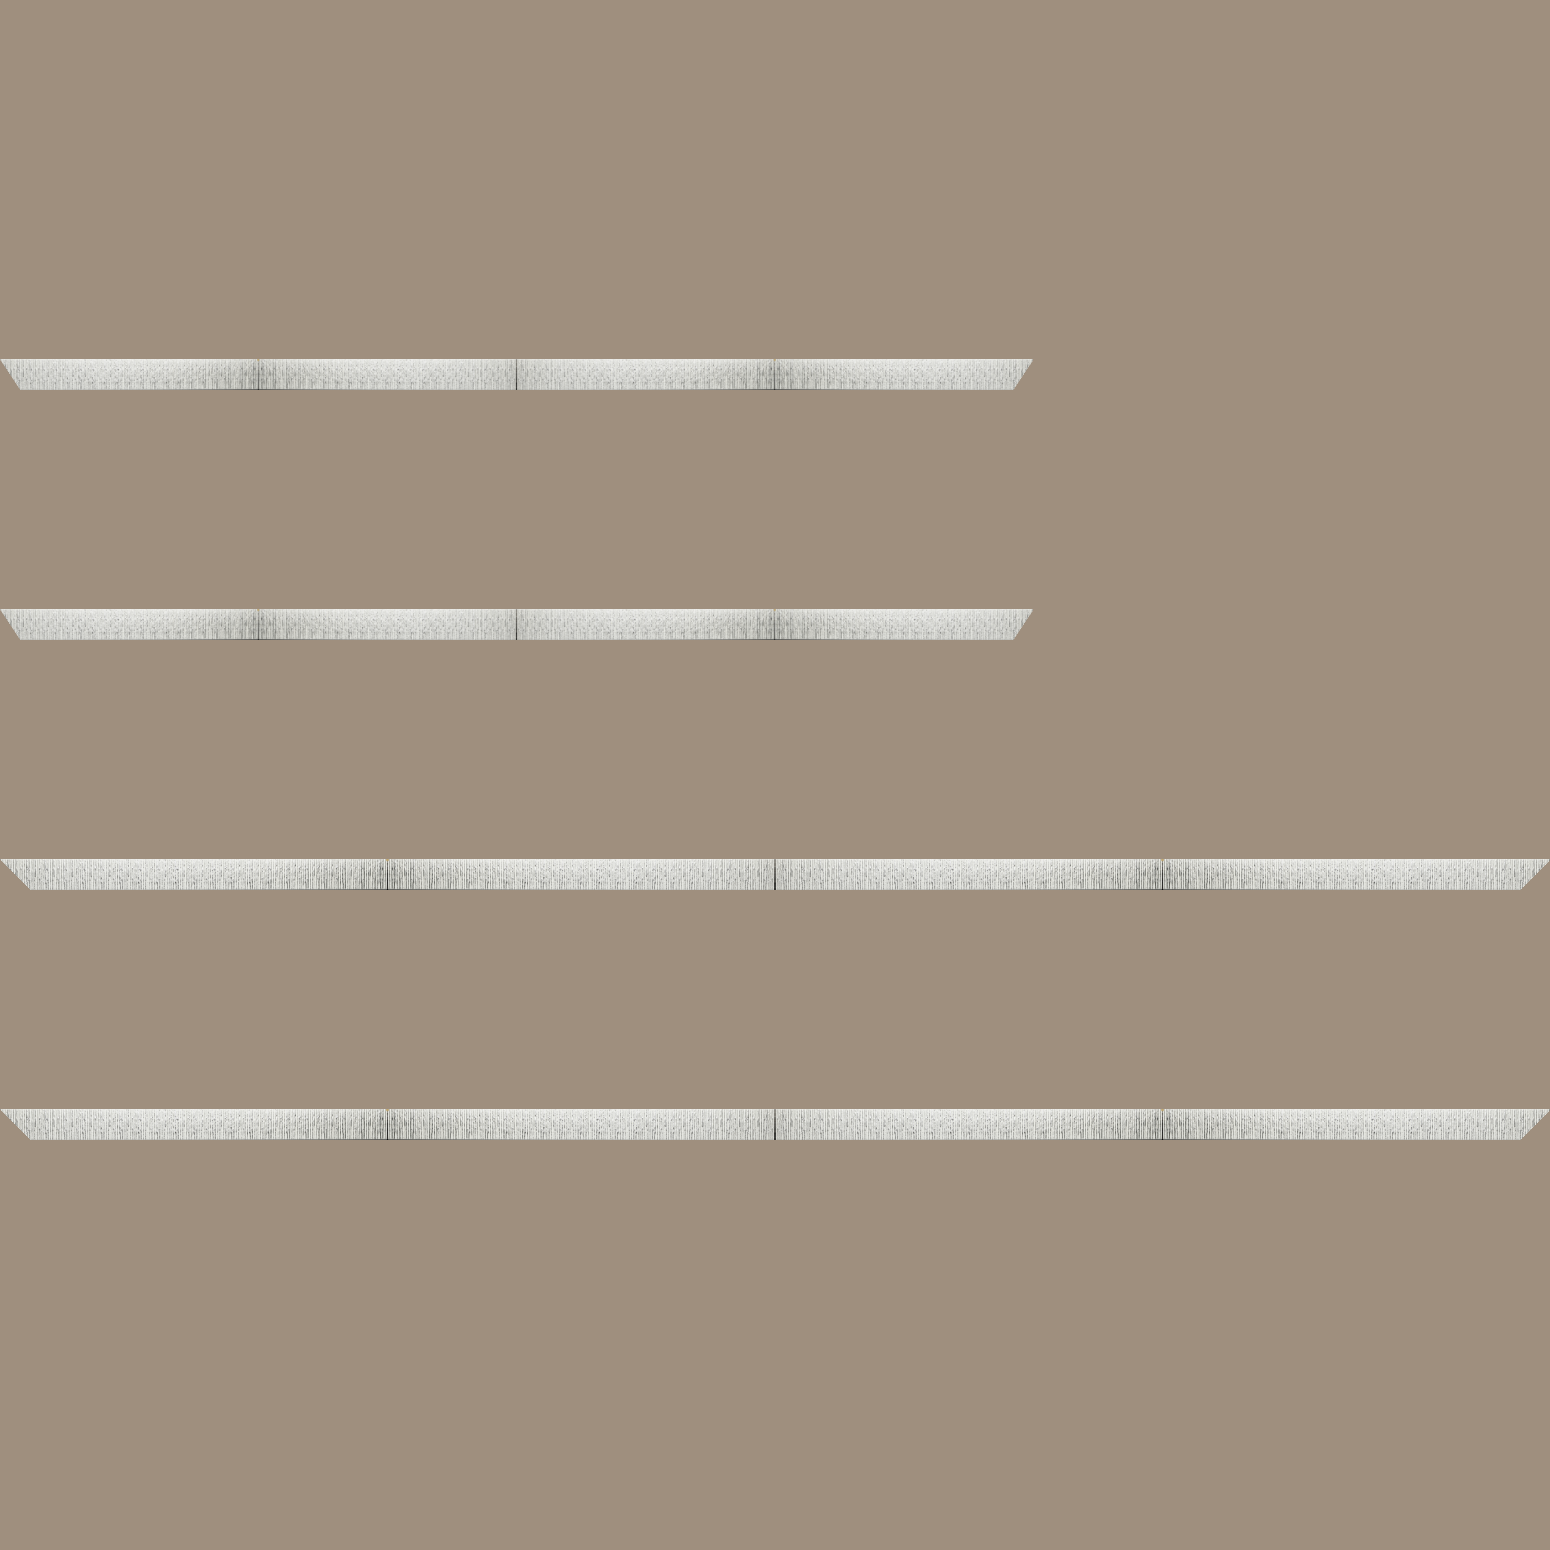 Baguette bois profil plat largeur 10.5cm couleur blanc mat strié argent chromé en relief - 34x40